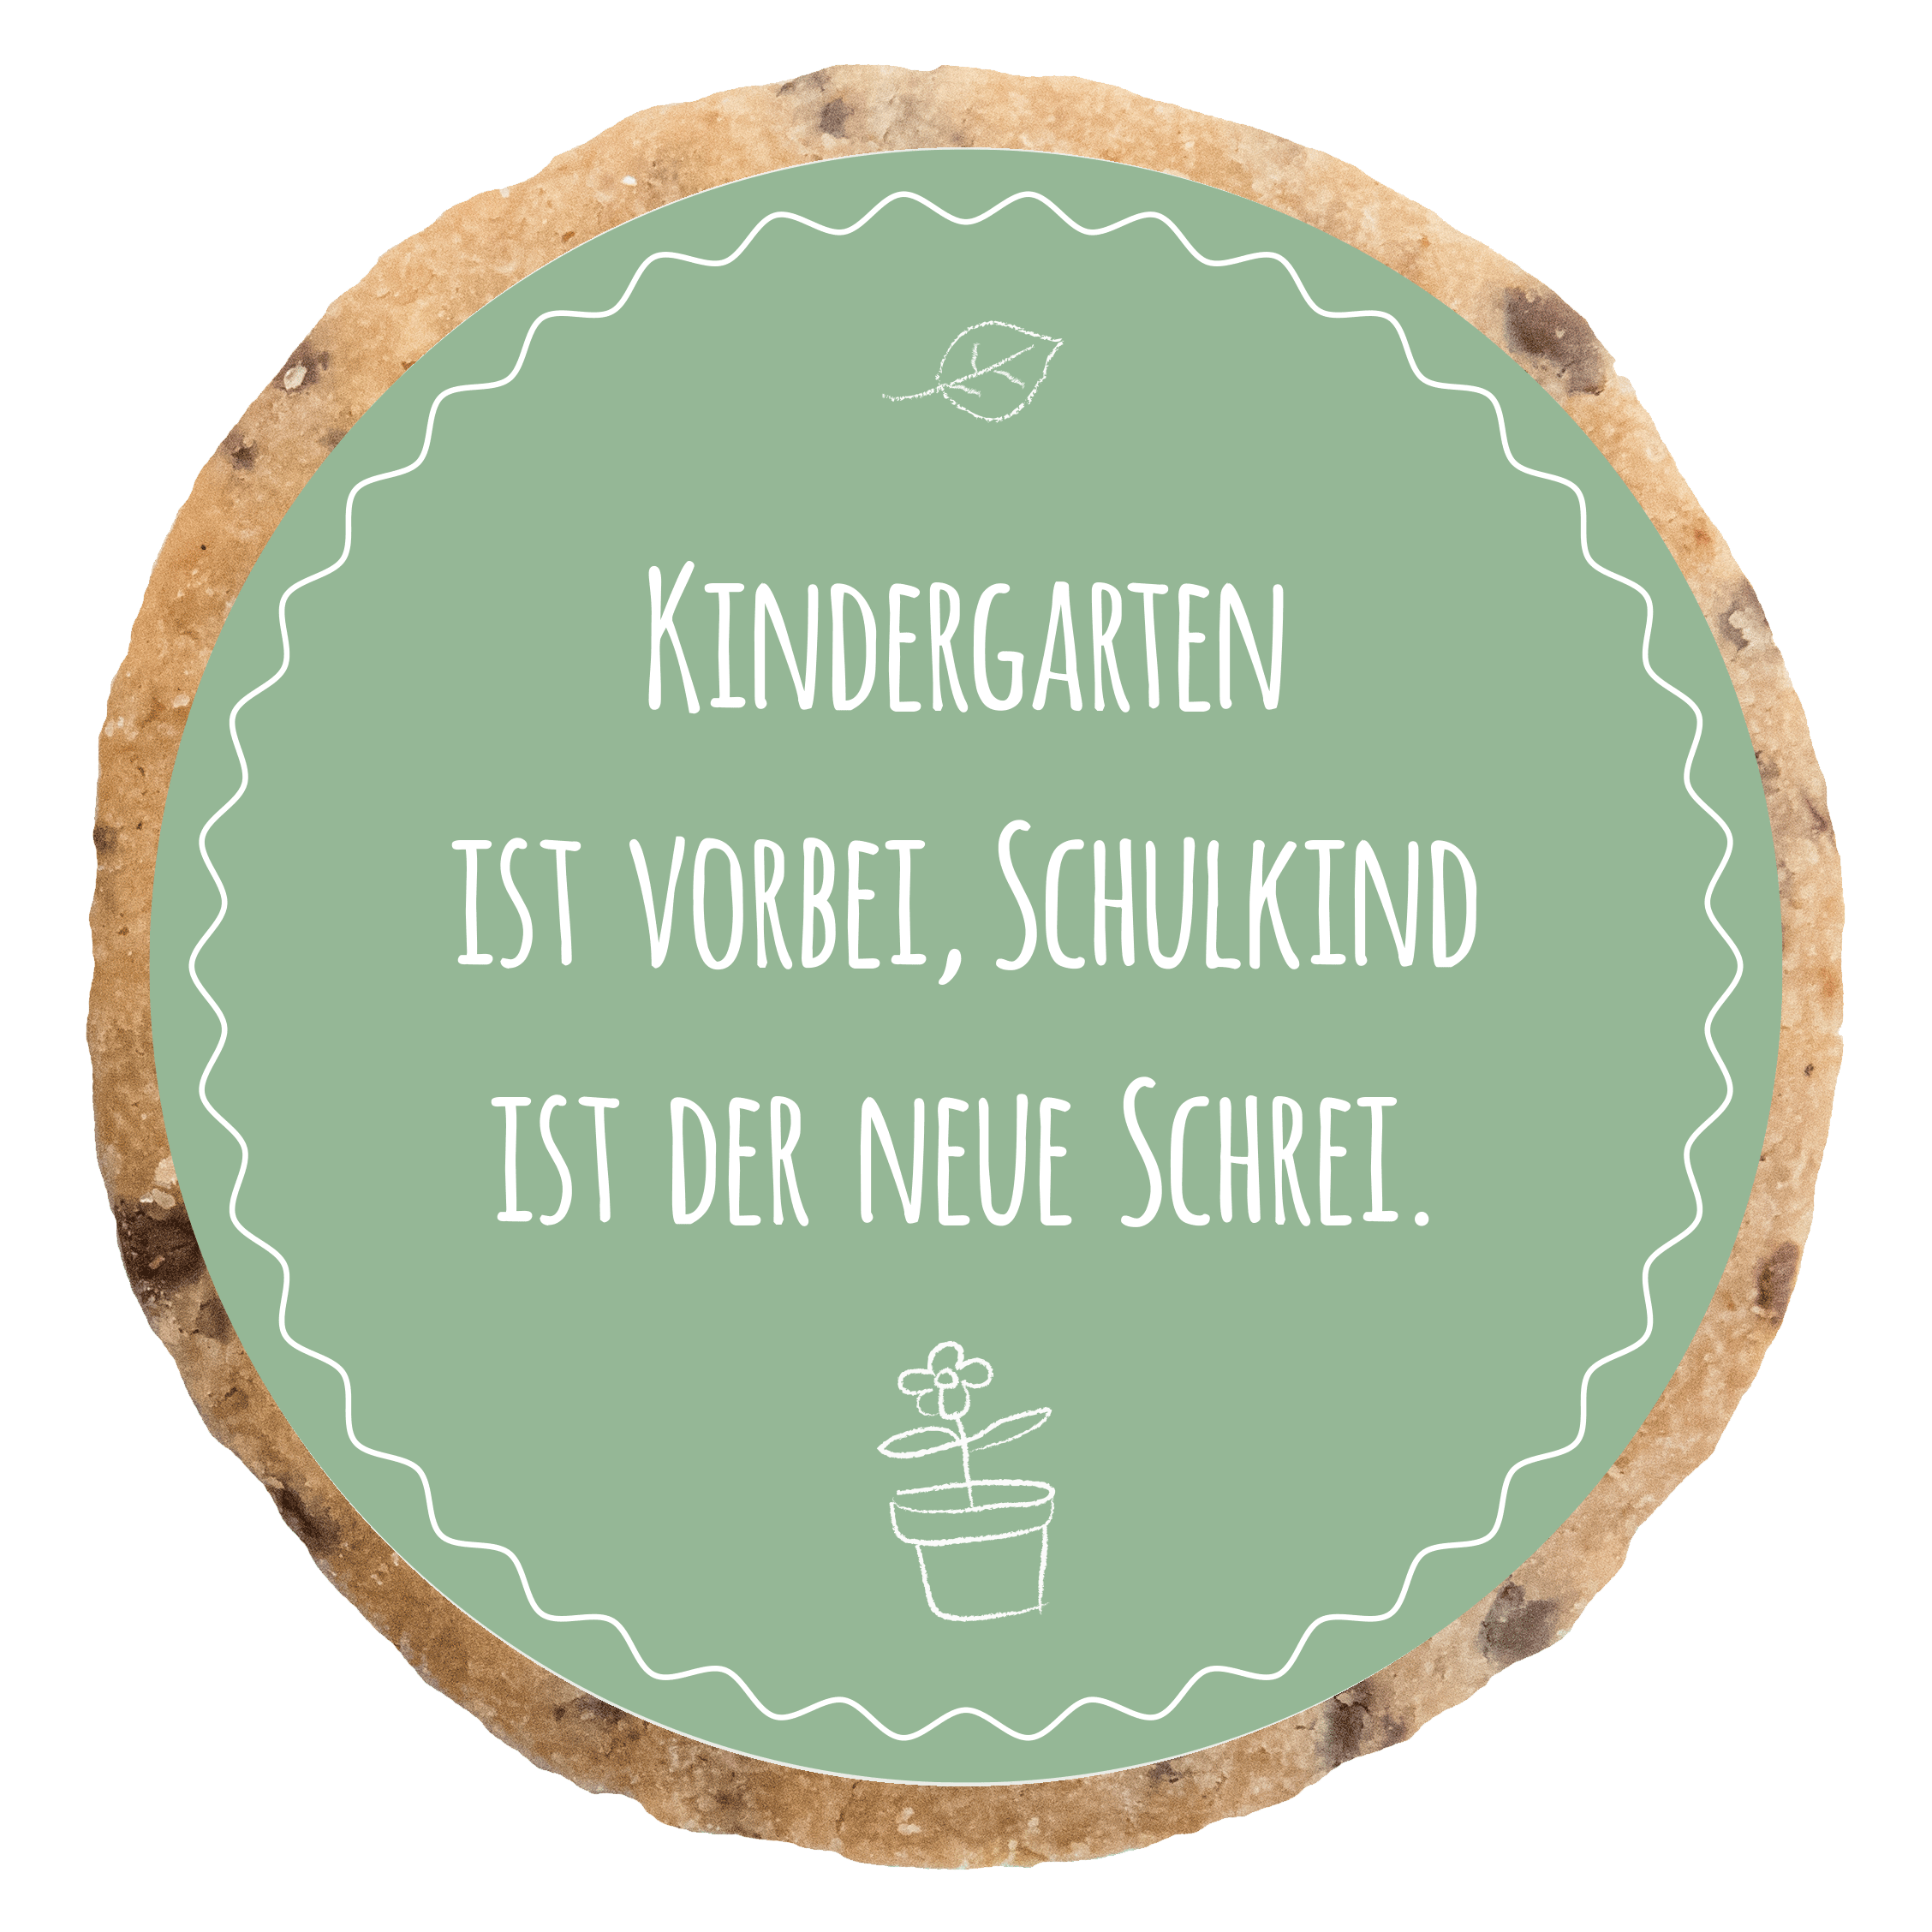 "Kindergarten ist vorbei" MotivKEKS